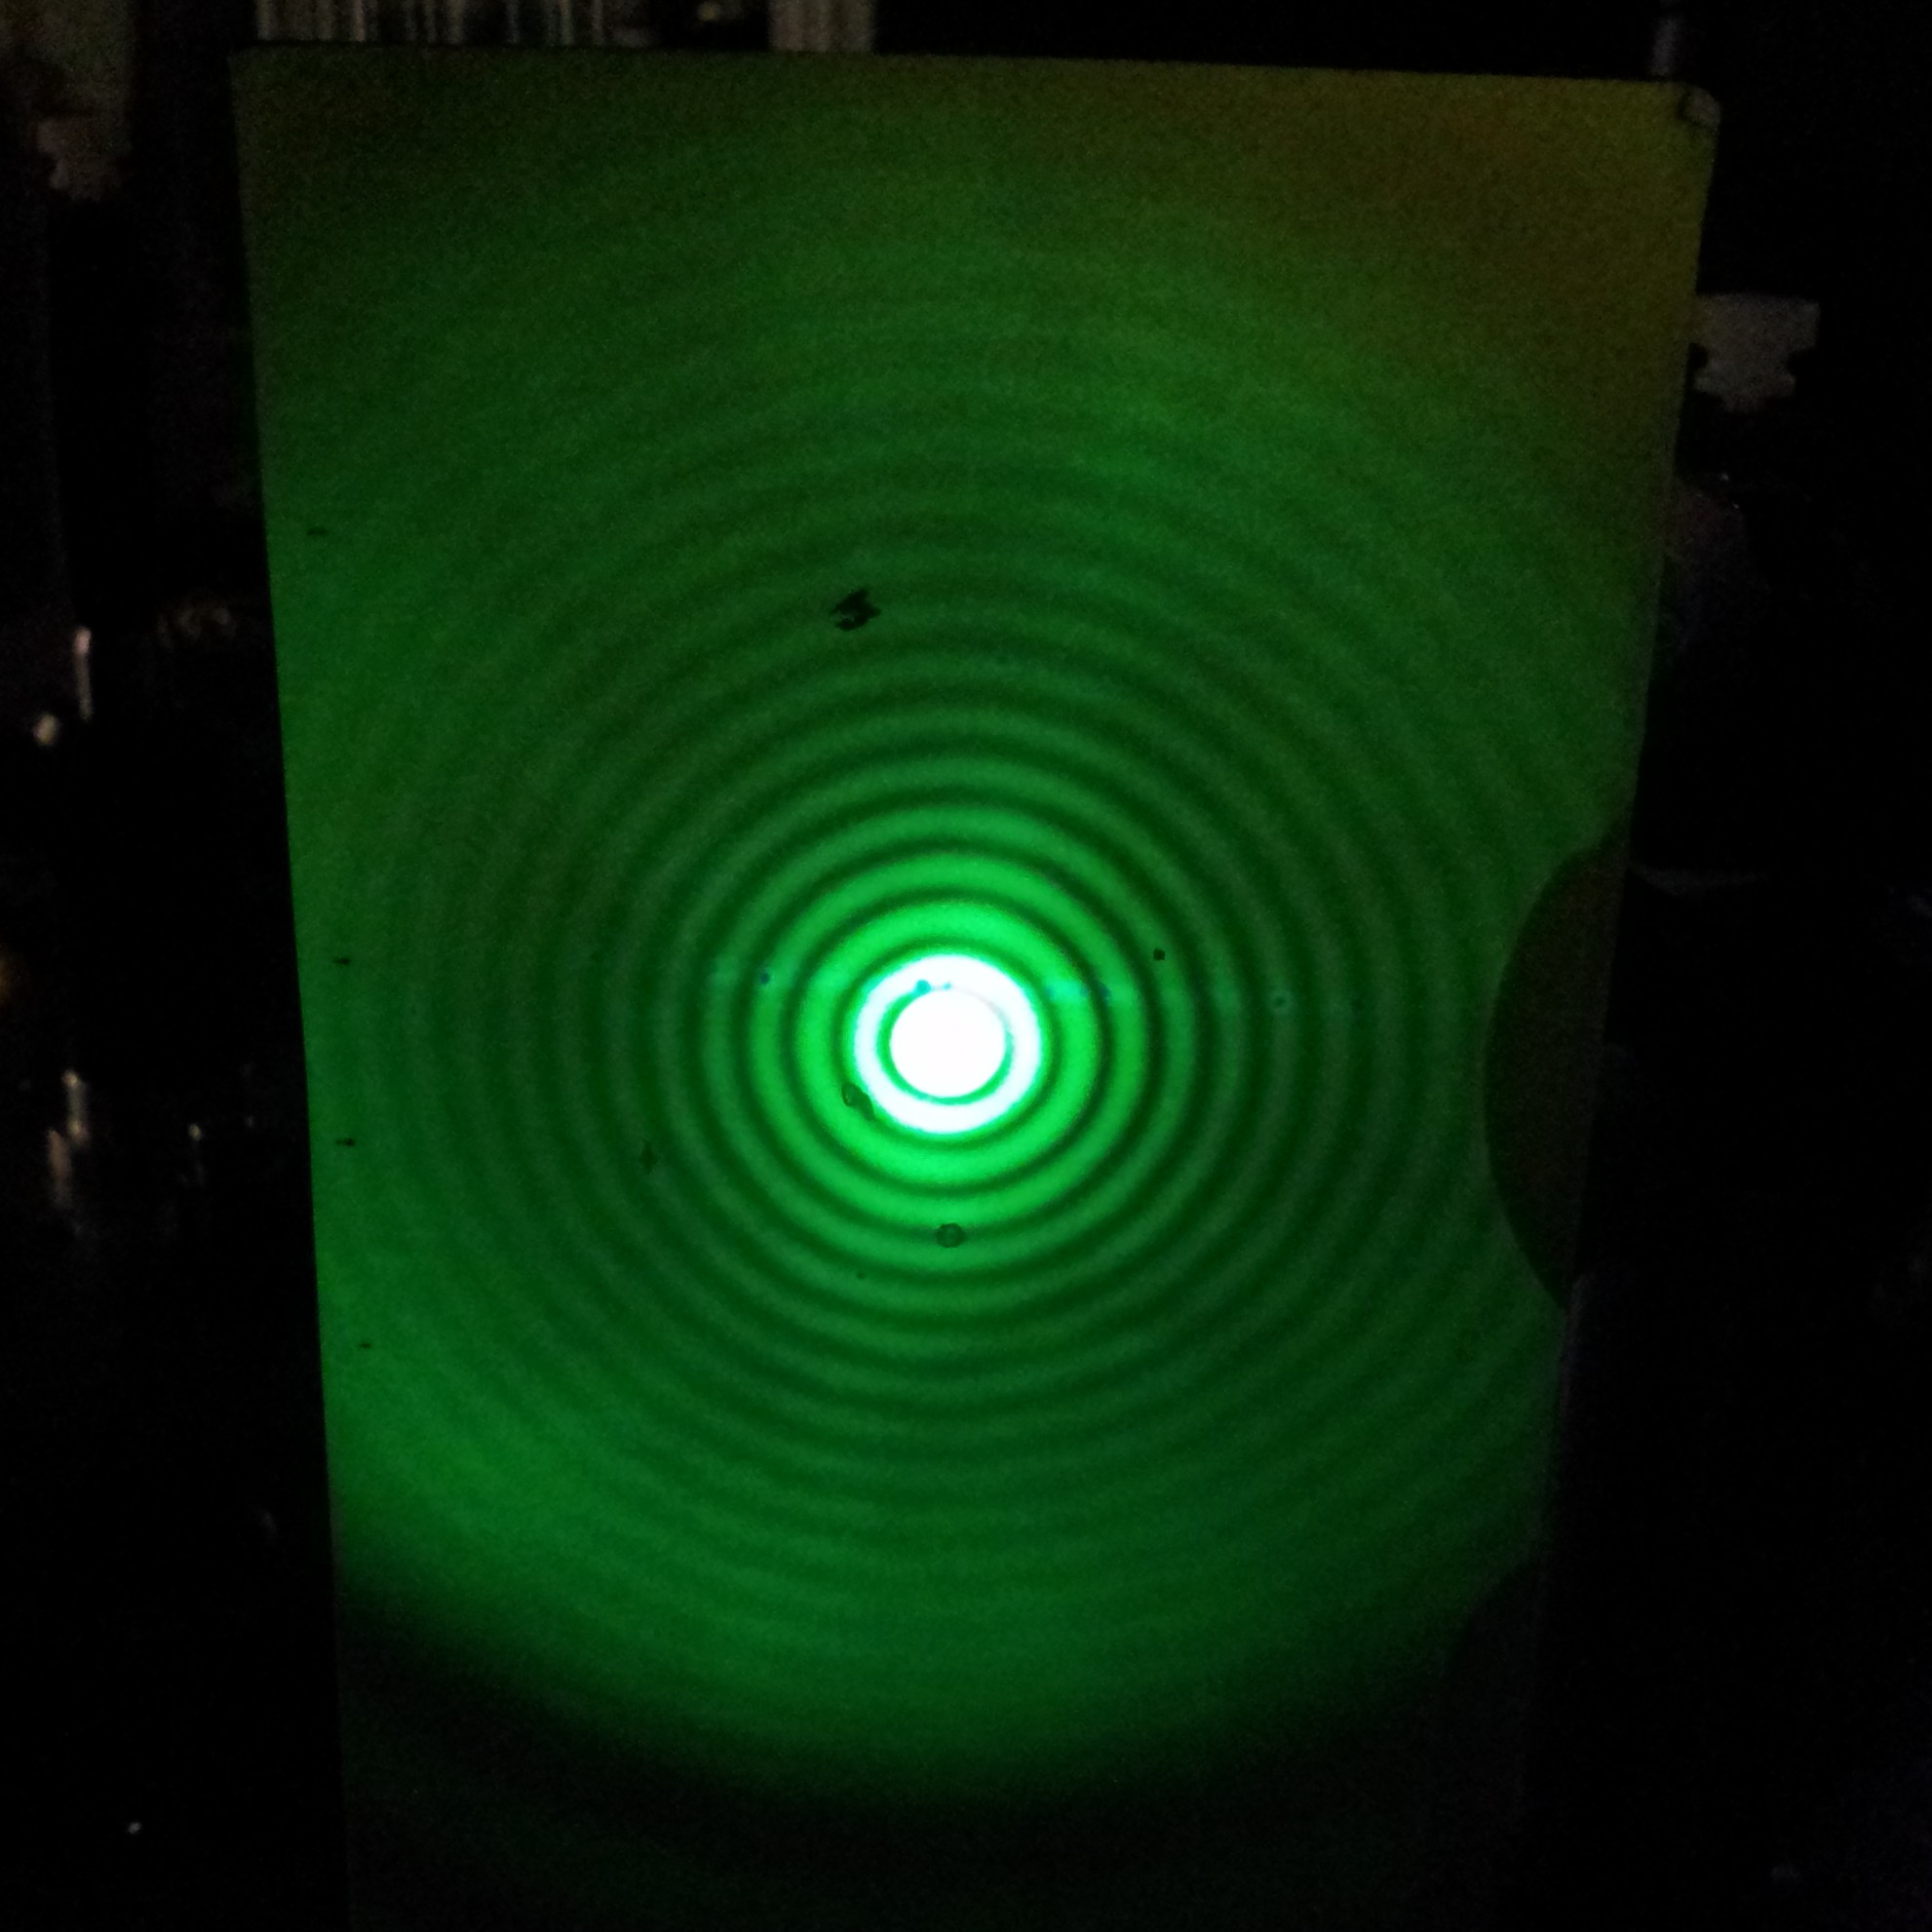 Реальный вид диска Эйри, созданный прохождением лазерного луча через точечное отверстие